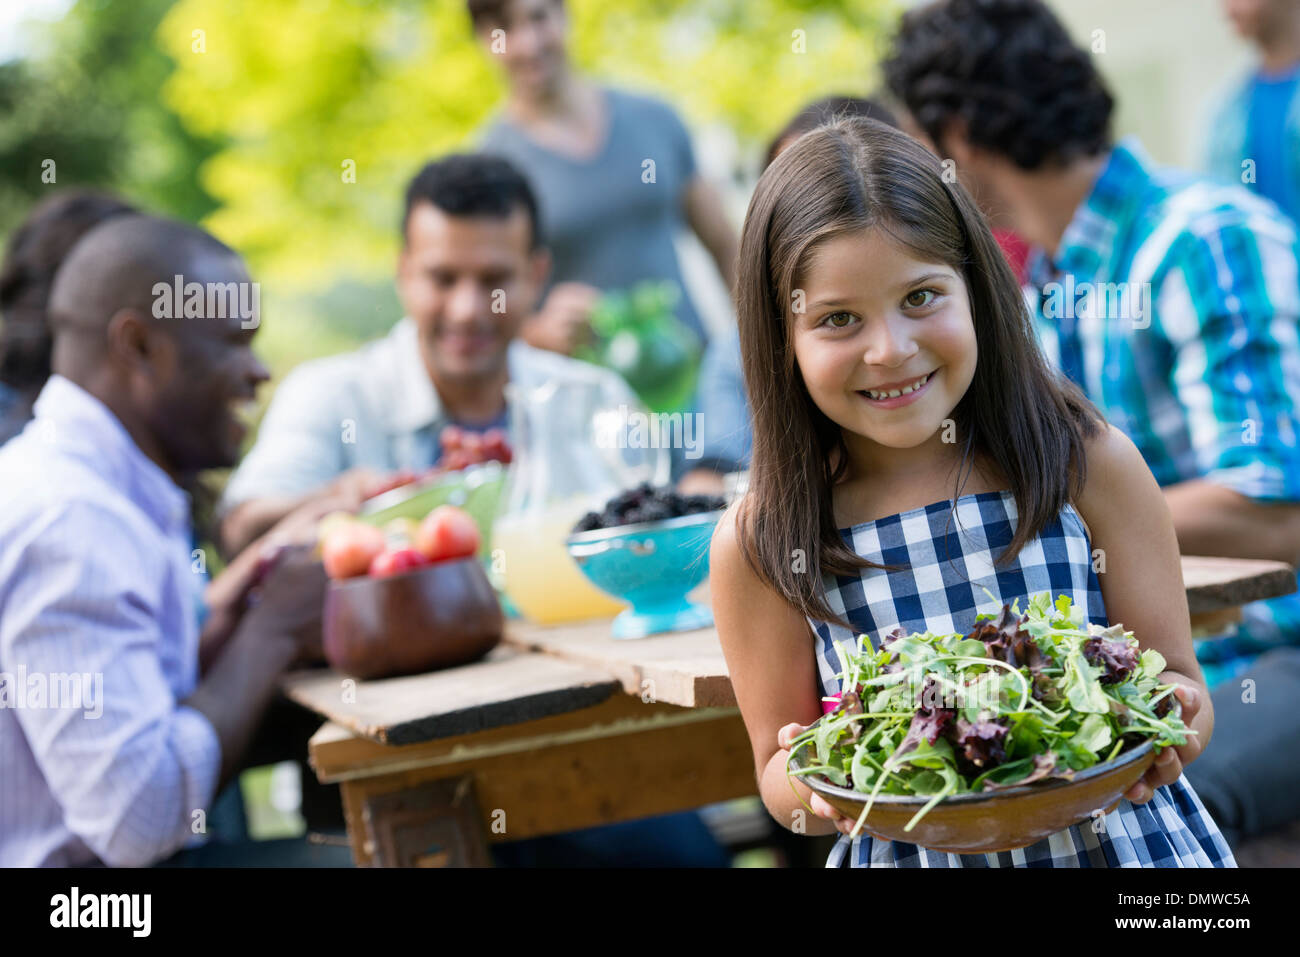 Erwachsene und Kinder an einem Tisch im Garten. Ein Kind hält eine Schüssel mit Salat. Stockfoto